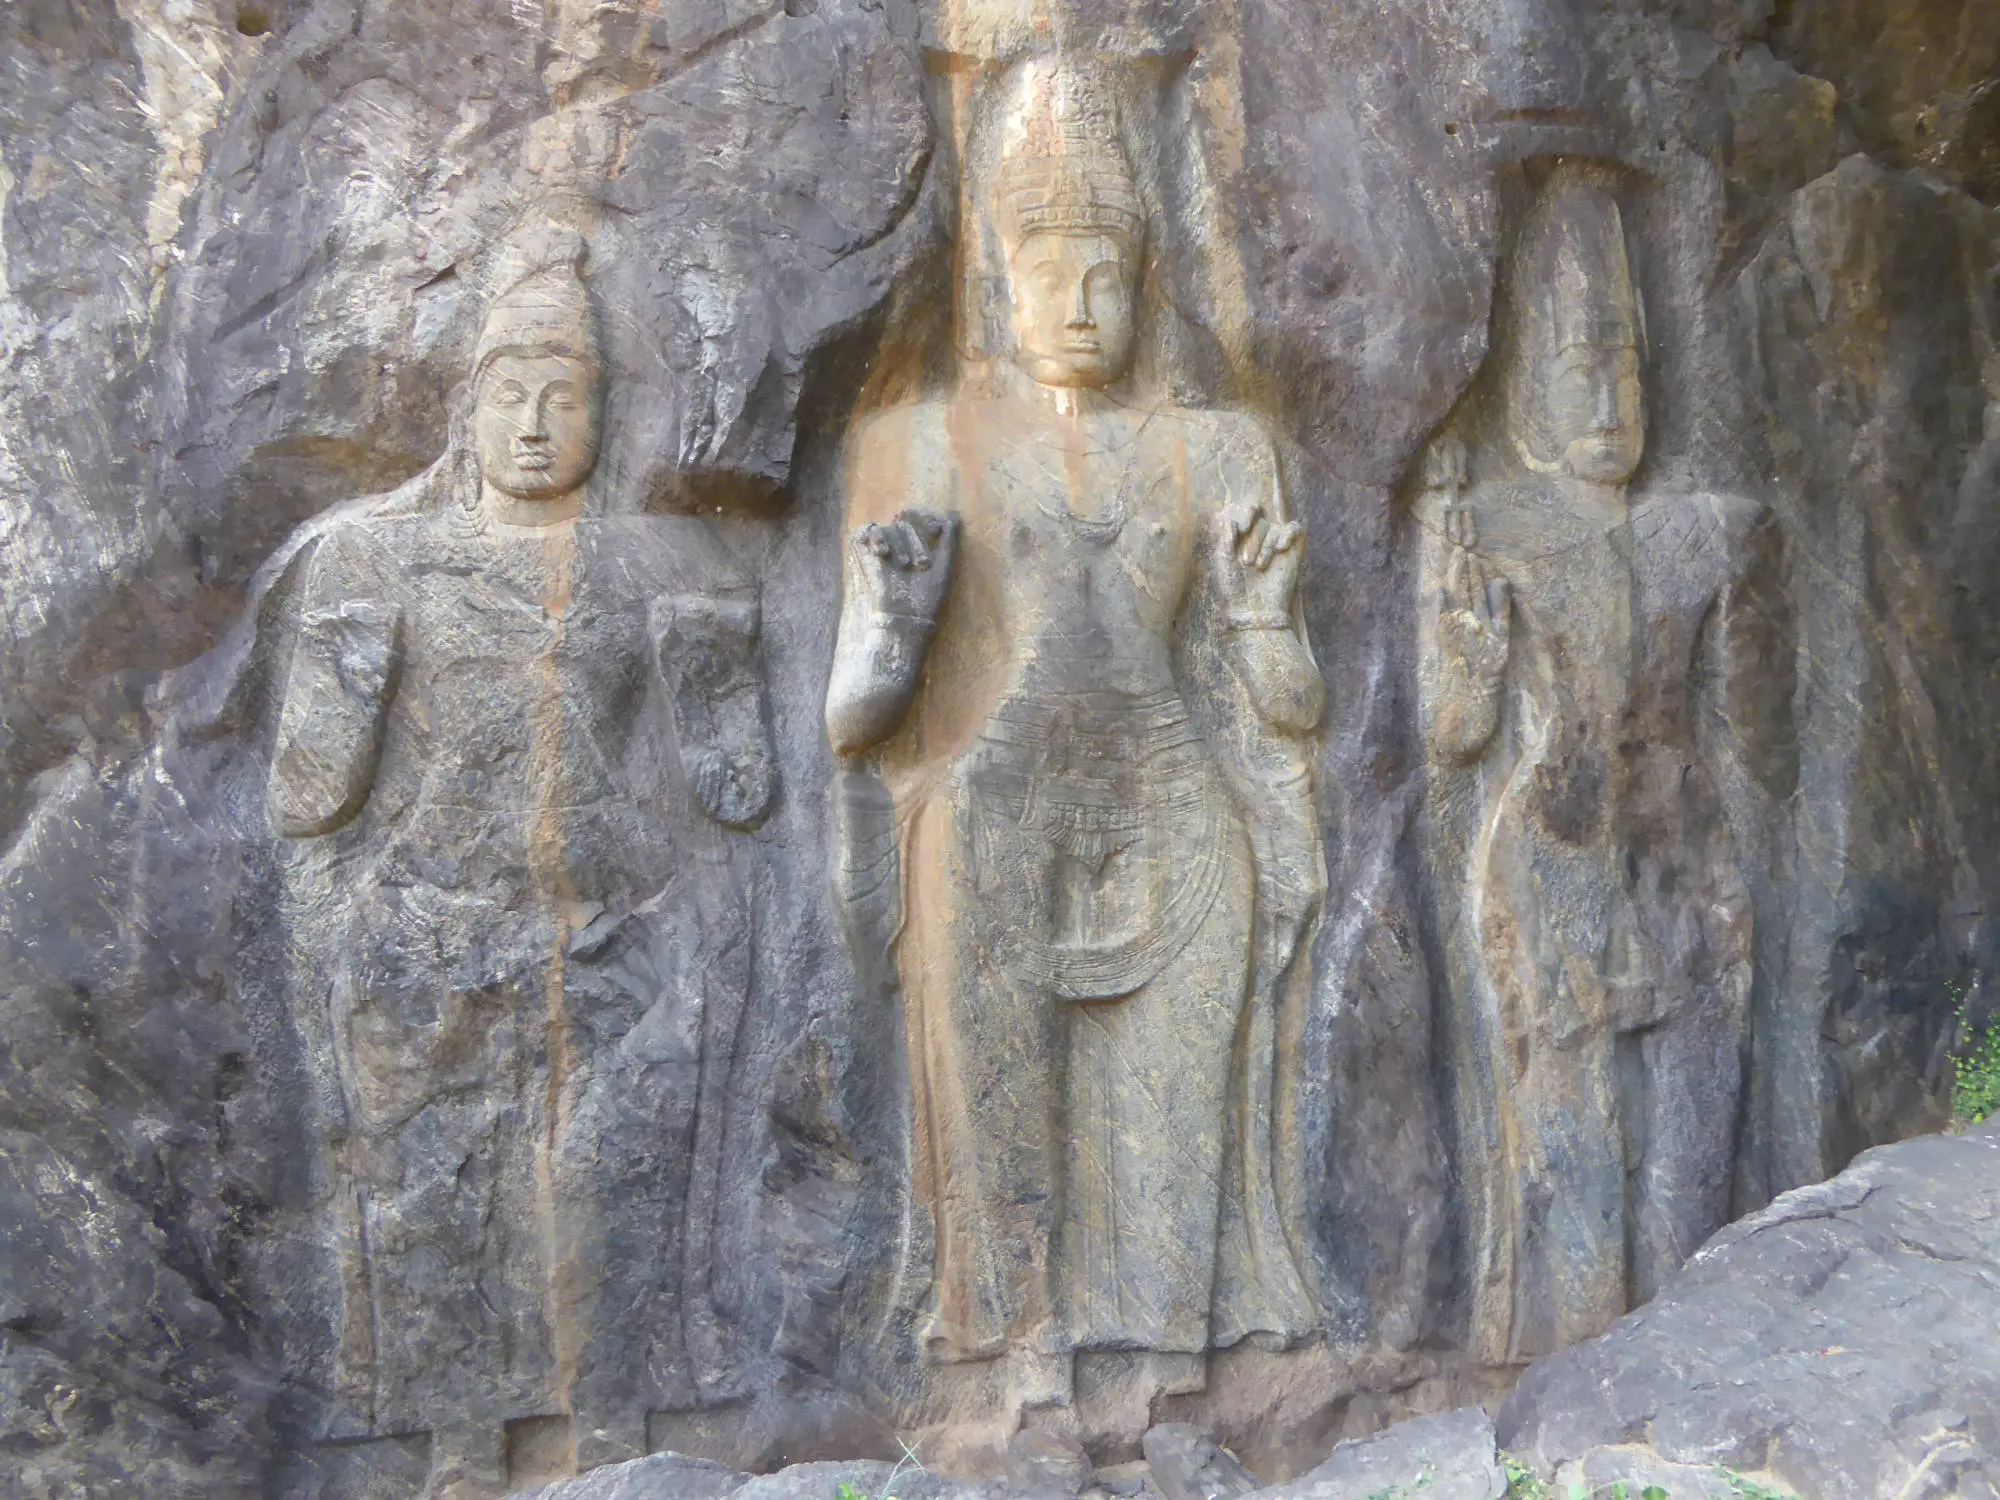 Statues carved in stone, Peace Pagoda, Unawatuna